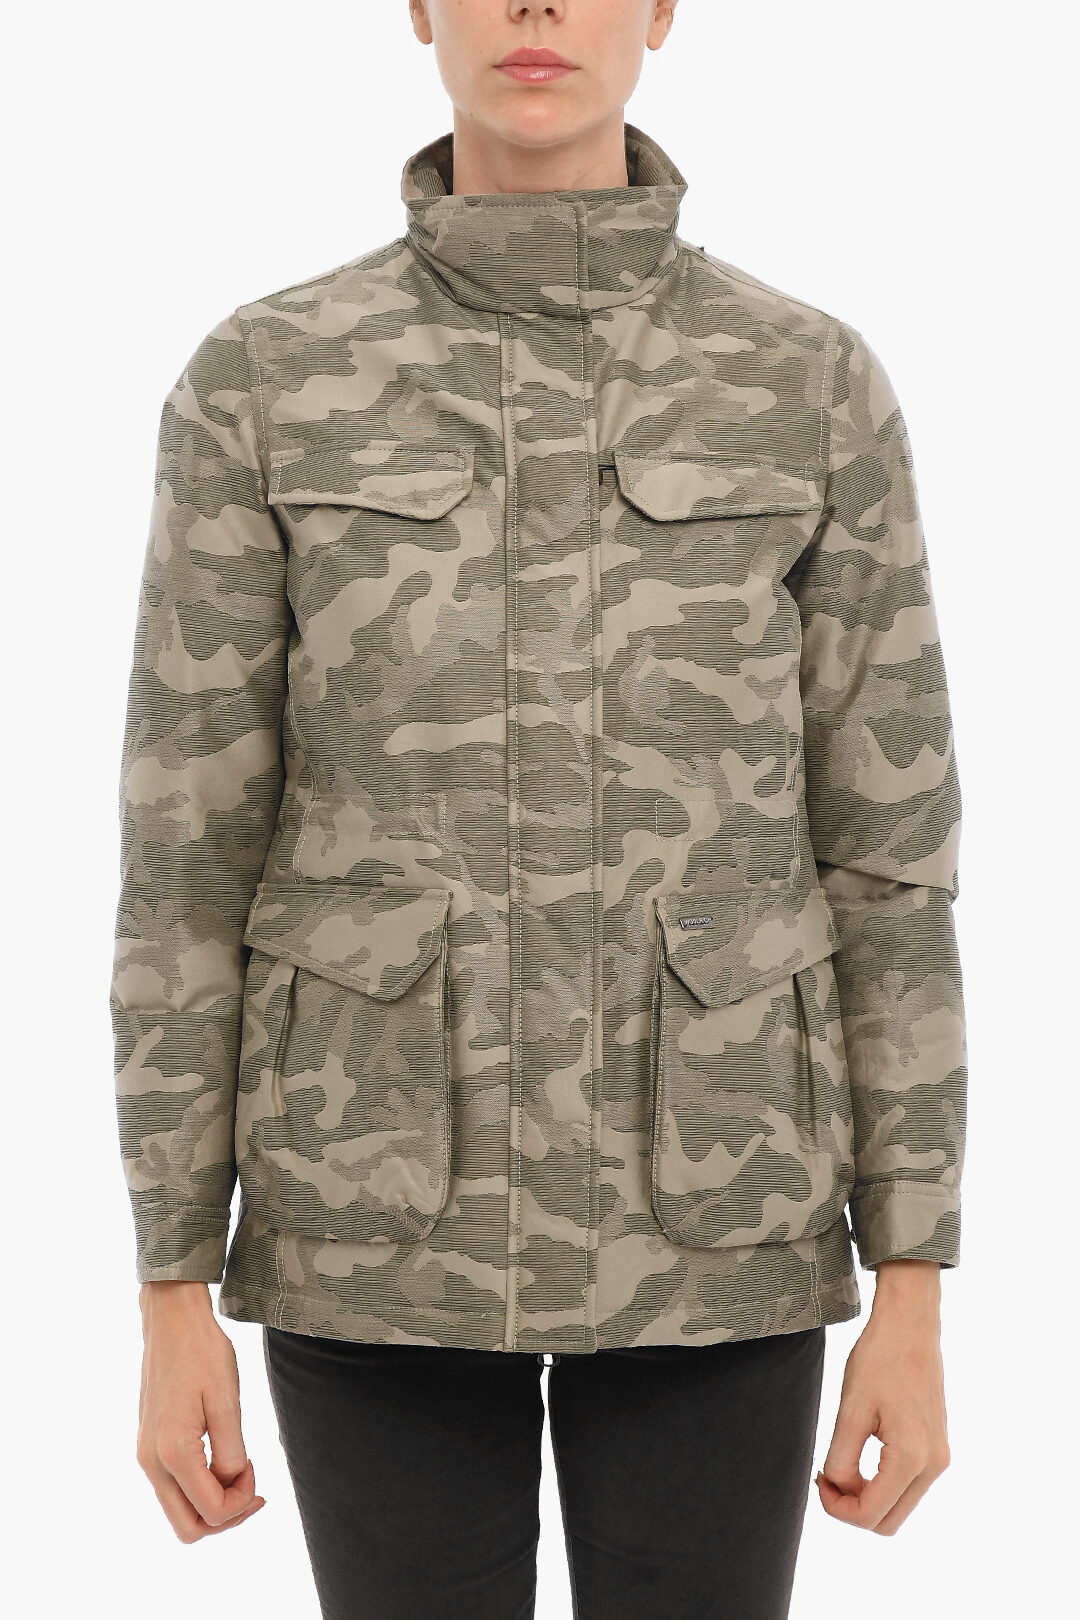 Woolrich Camouflage KEENE FIELD Down Jacket Double Brest Pockets women - Glamood Outlet